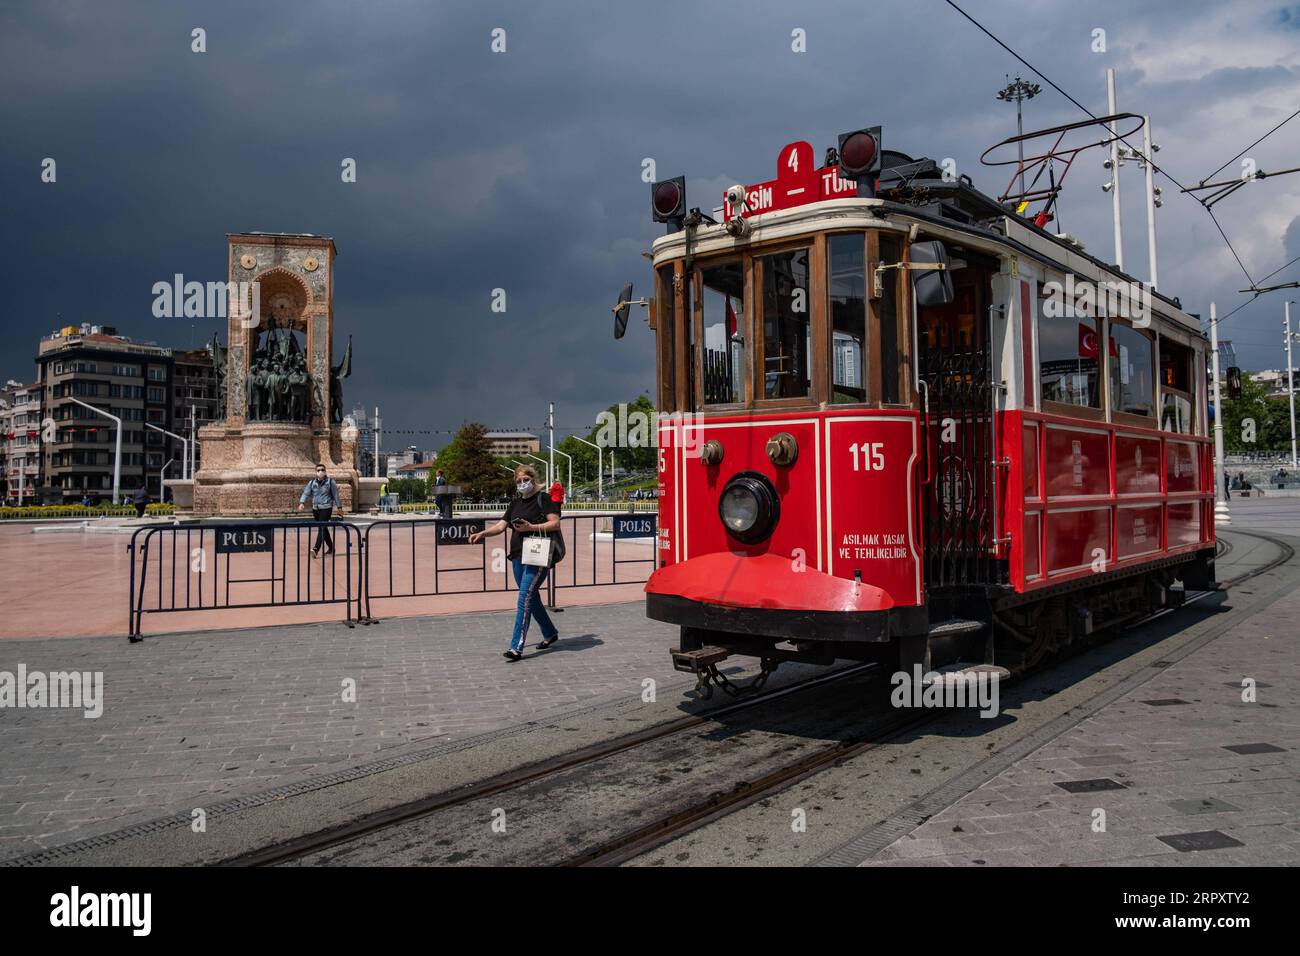 200602 -- ISTANBUL, 2. Juni 2020 Xinhua -- Foto aufgenommen am 2. Juni 2020 zeigt die nostalgische Straßenbahn auf einer Straße in Istanbul, Türkei. Die nostalgischen Straßenbahndienste im Zentrum Istanbuls nahmen am Dienstag ihren Betrieb wieder auf, nachdem sie wegen der COVID-19-Pandemie für mehr als zwei Monate eingestellt worden waren. Foto von Yasin Akgul/Xinhua TURKEY-ISTANBUL-COVID-19-TRAM SERVICE-RESUMPTION PUBLICATIONxNOTxINxCHN Stockfoto